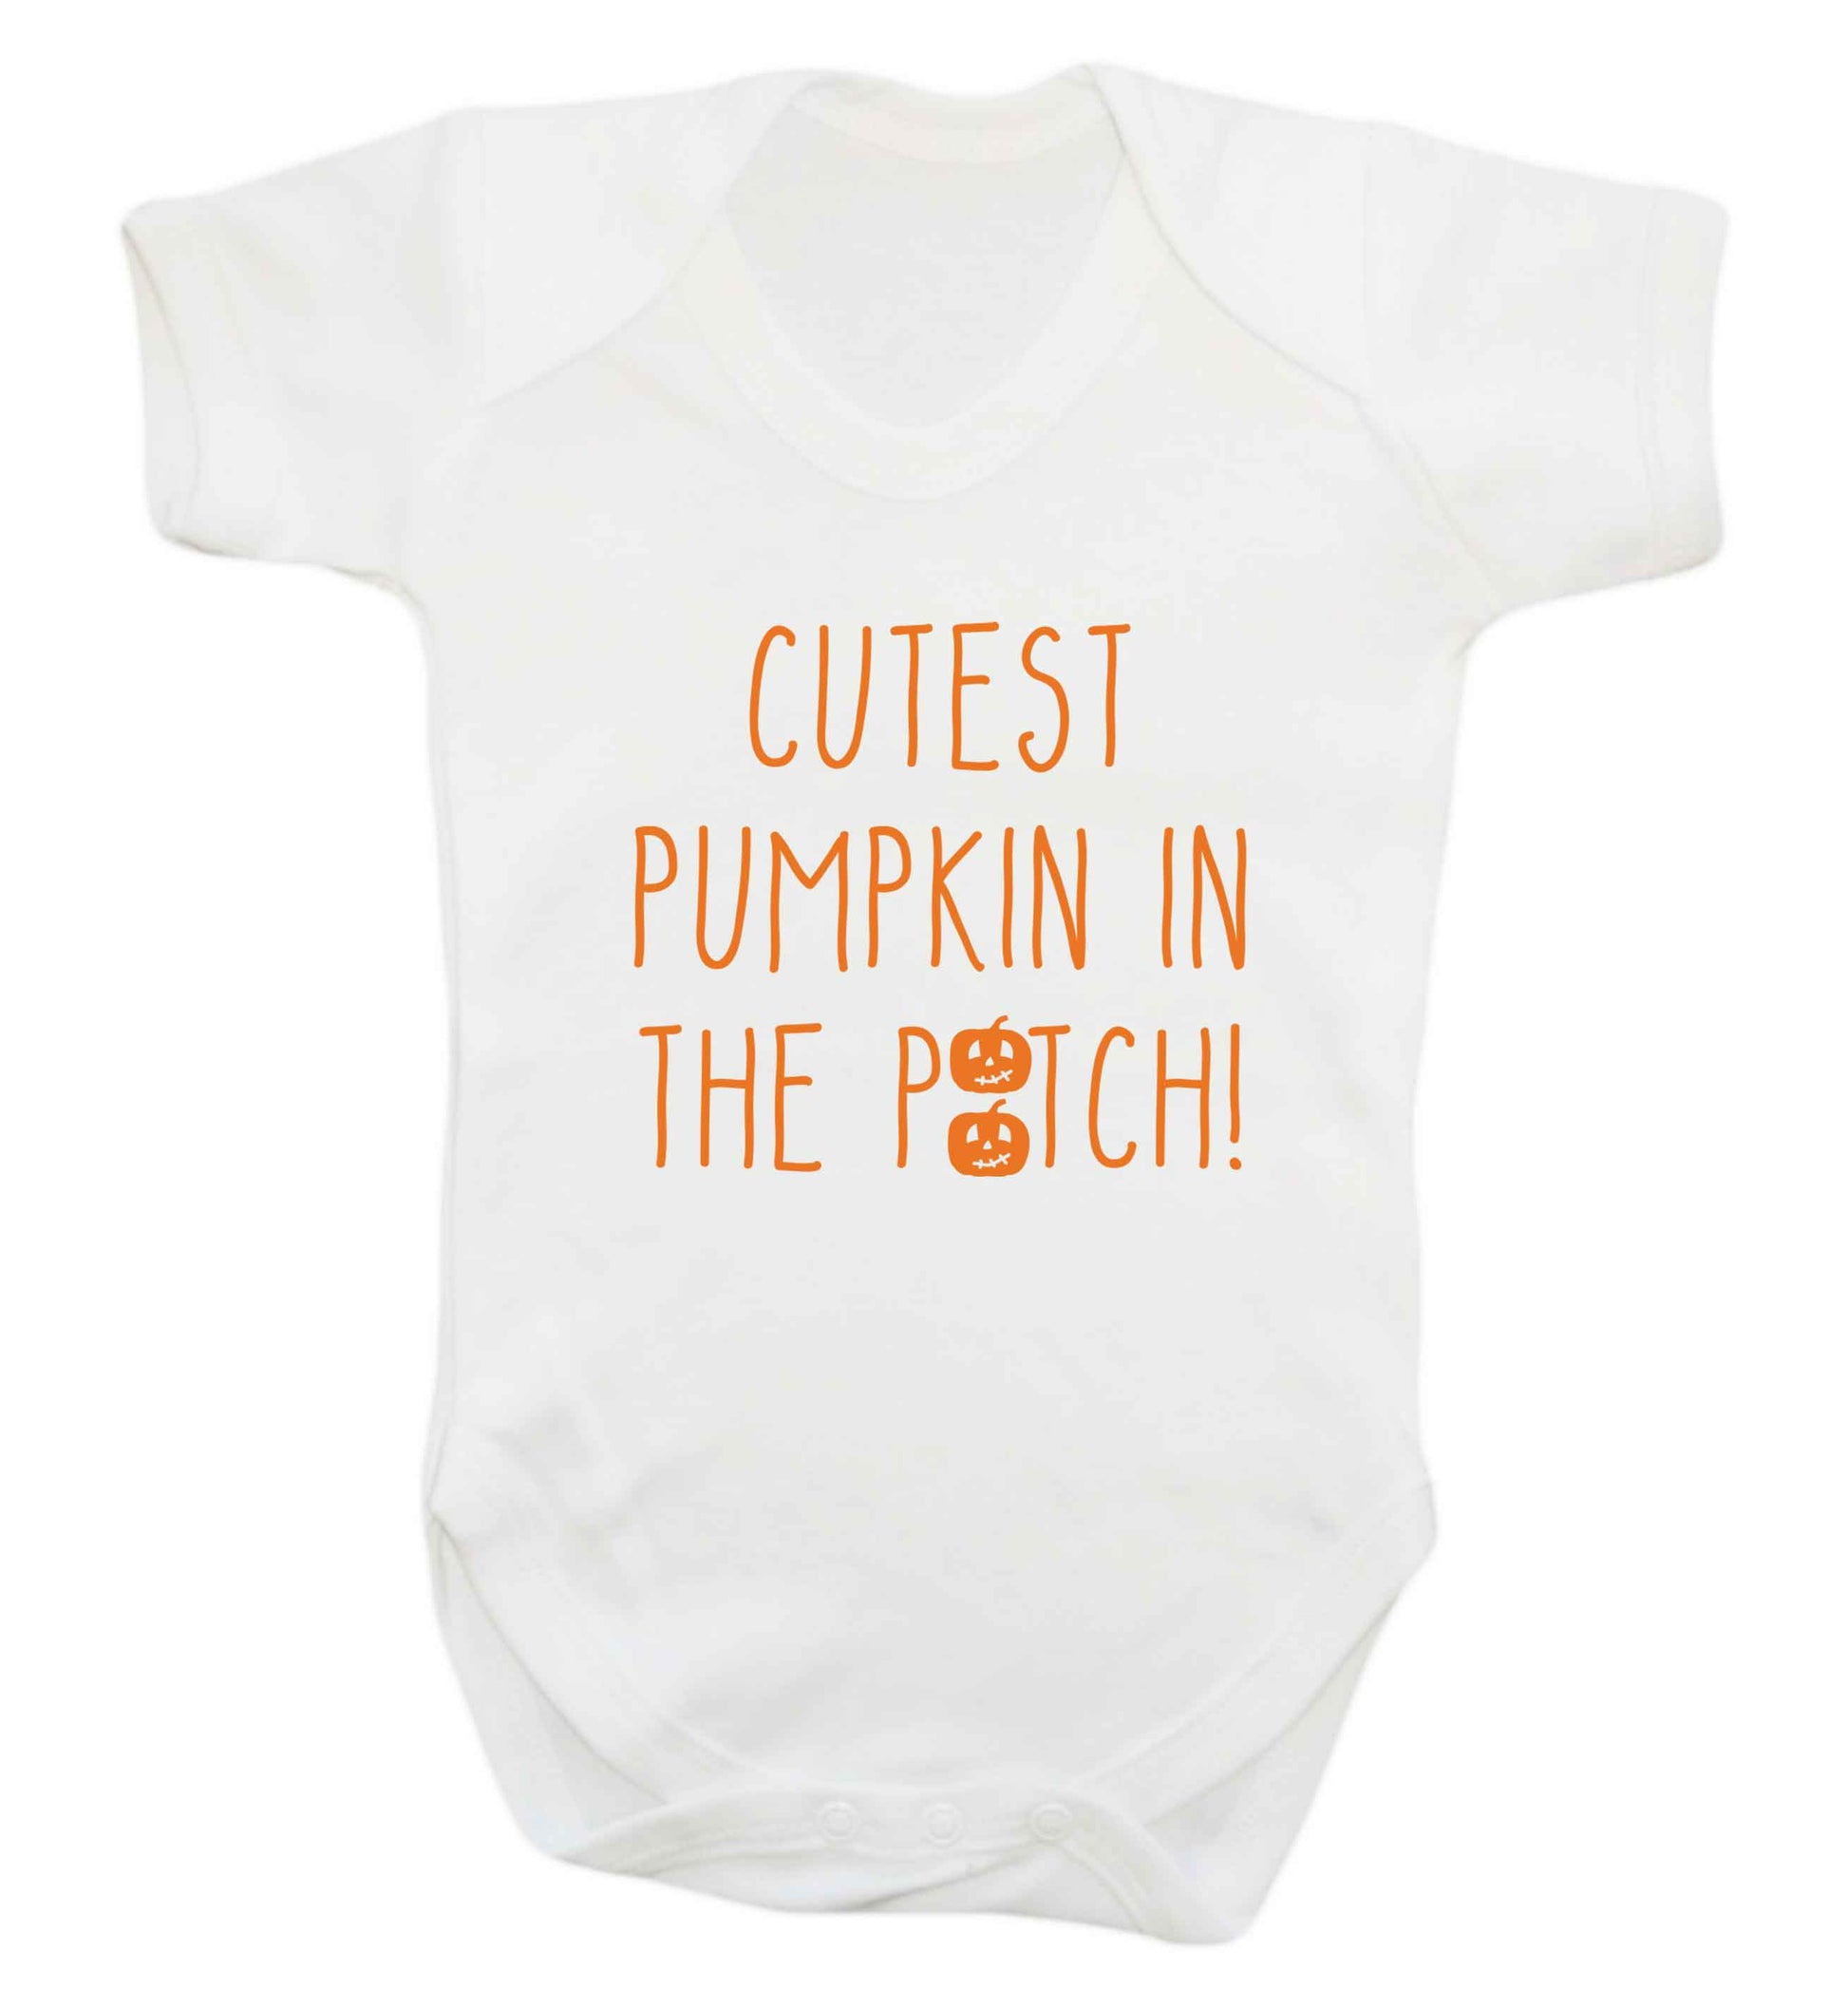 Calm Pumpkin Season baby vest white 18-24 months